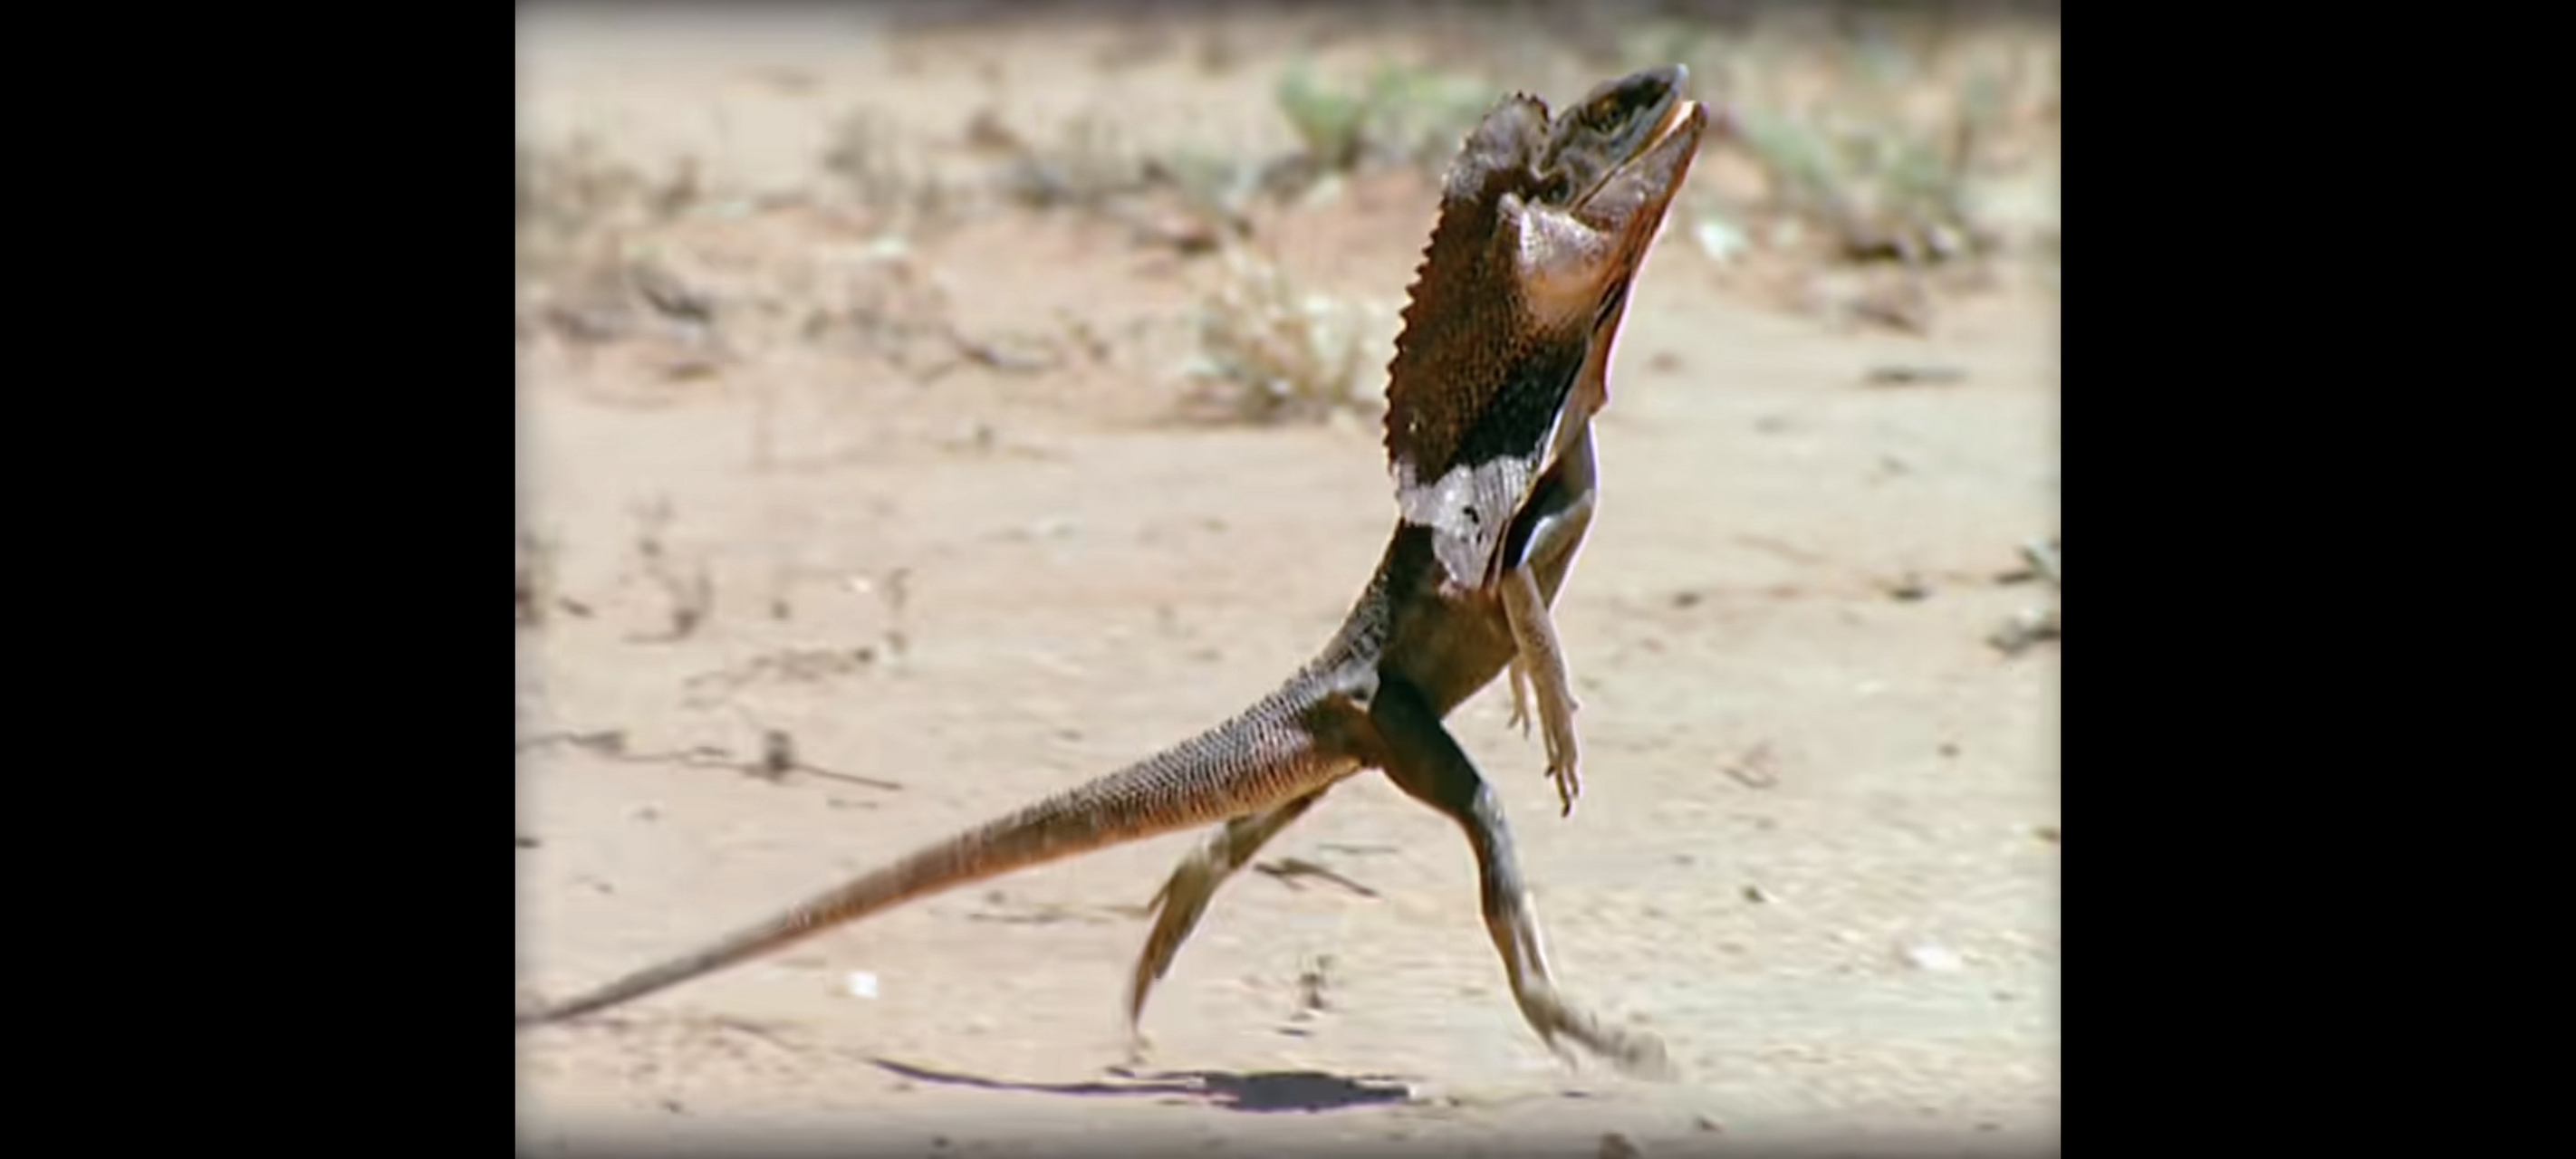 沙漠蜥蜴跑步图片